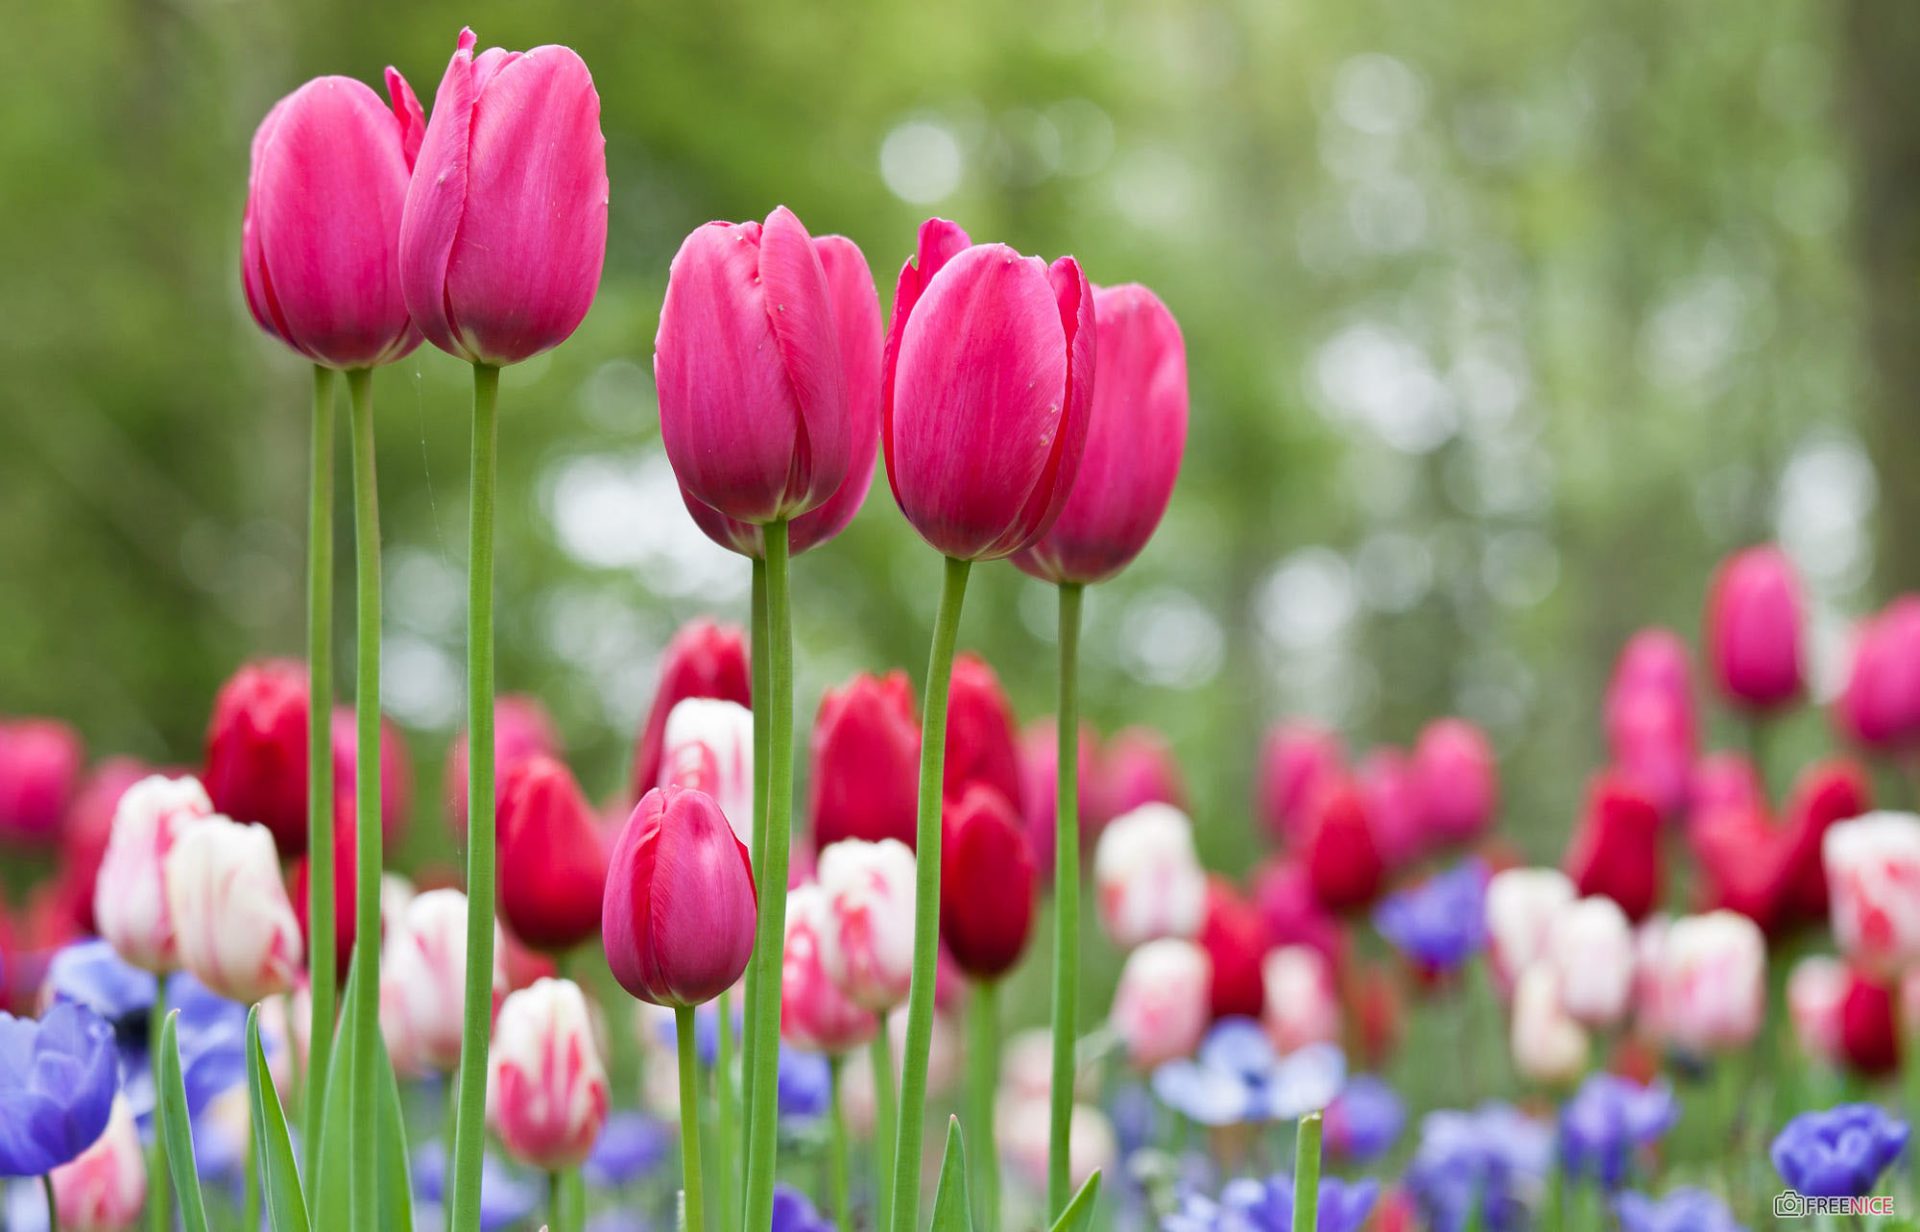 Hình Ảnh Ý Nghĩa Hoa Tulip Đẹp Ngọt Ngào, Dịu Dàng Nhất